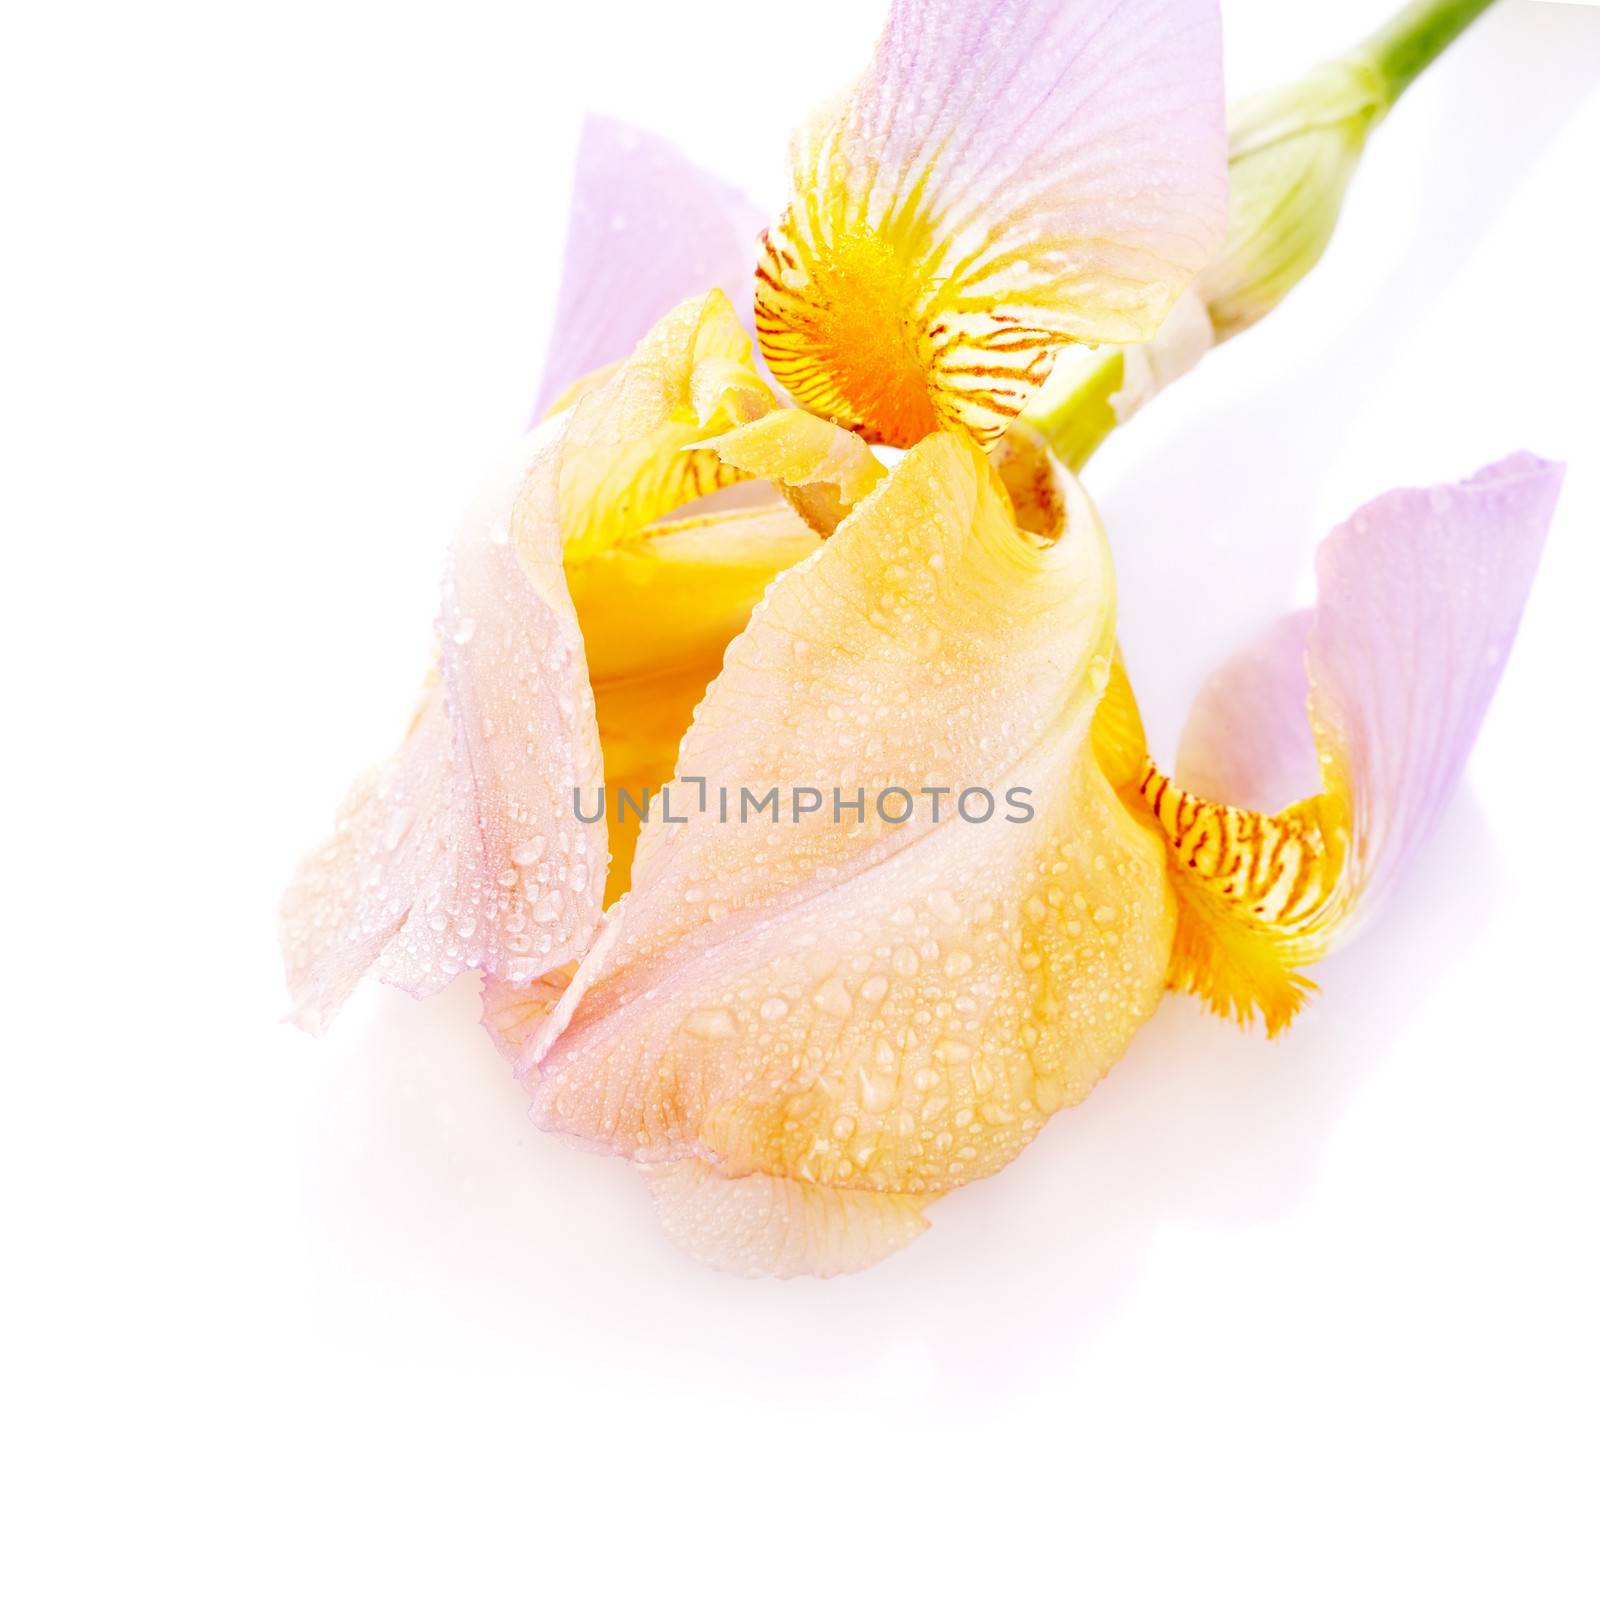 Iris flower. Yellow iris. Petals of a  flower of an iris. Flower in dew drops. Flower petals in dew drops.